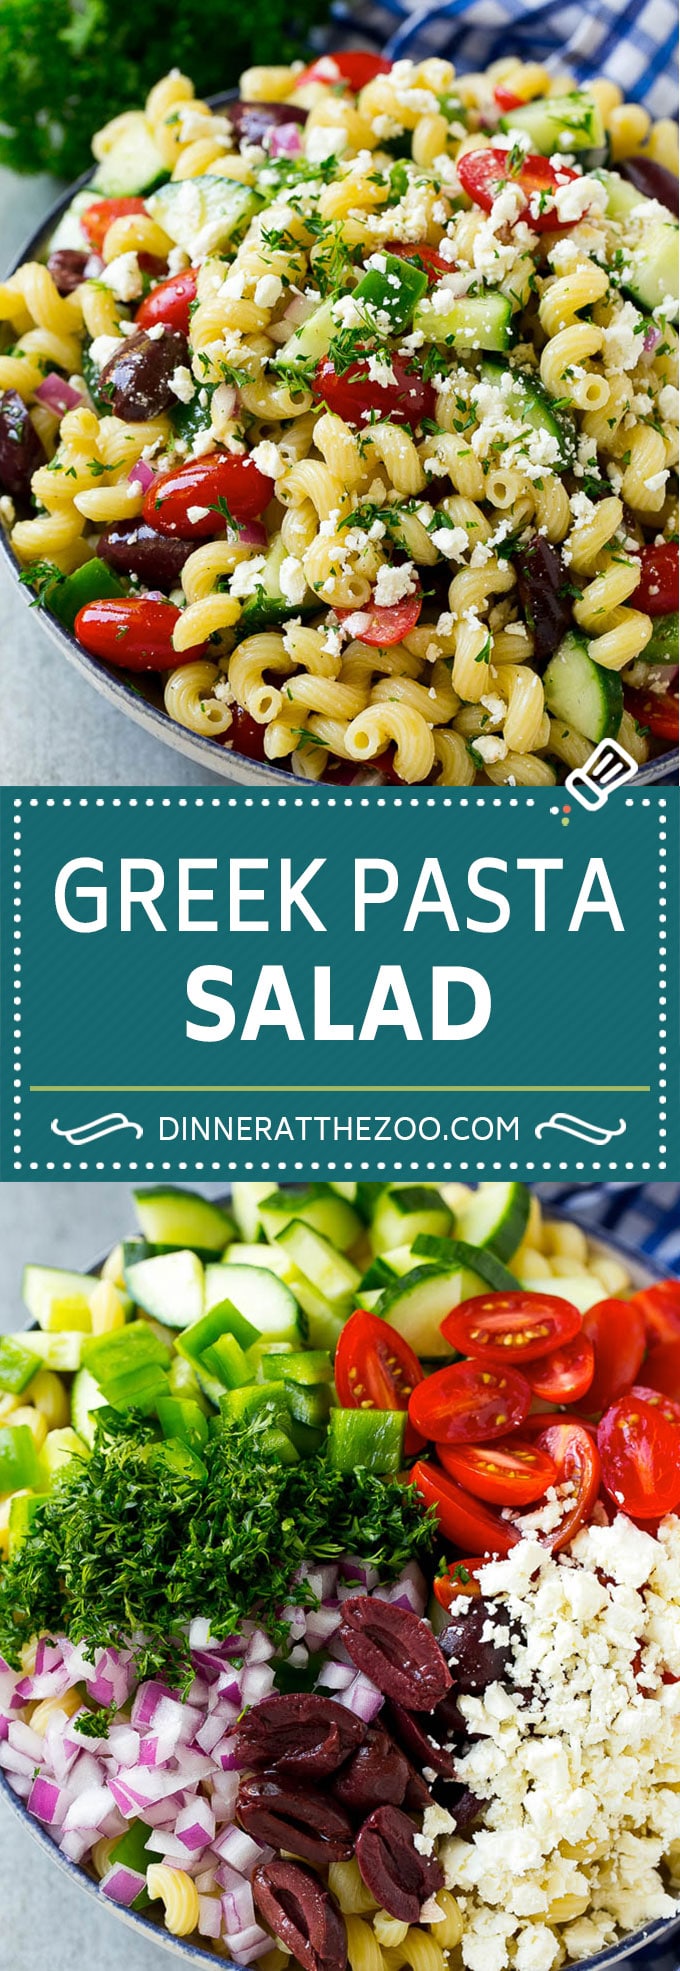 Greek Pasta Salad | Easy Pasta Salad | Vegetable Pasta Salad #pasta #salad #greek #cucumber #tomato #vegetarian #dinner #dinneratthezoo